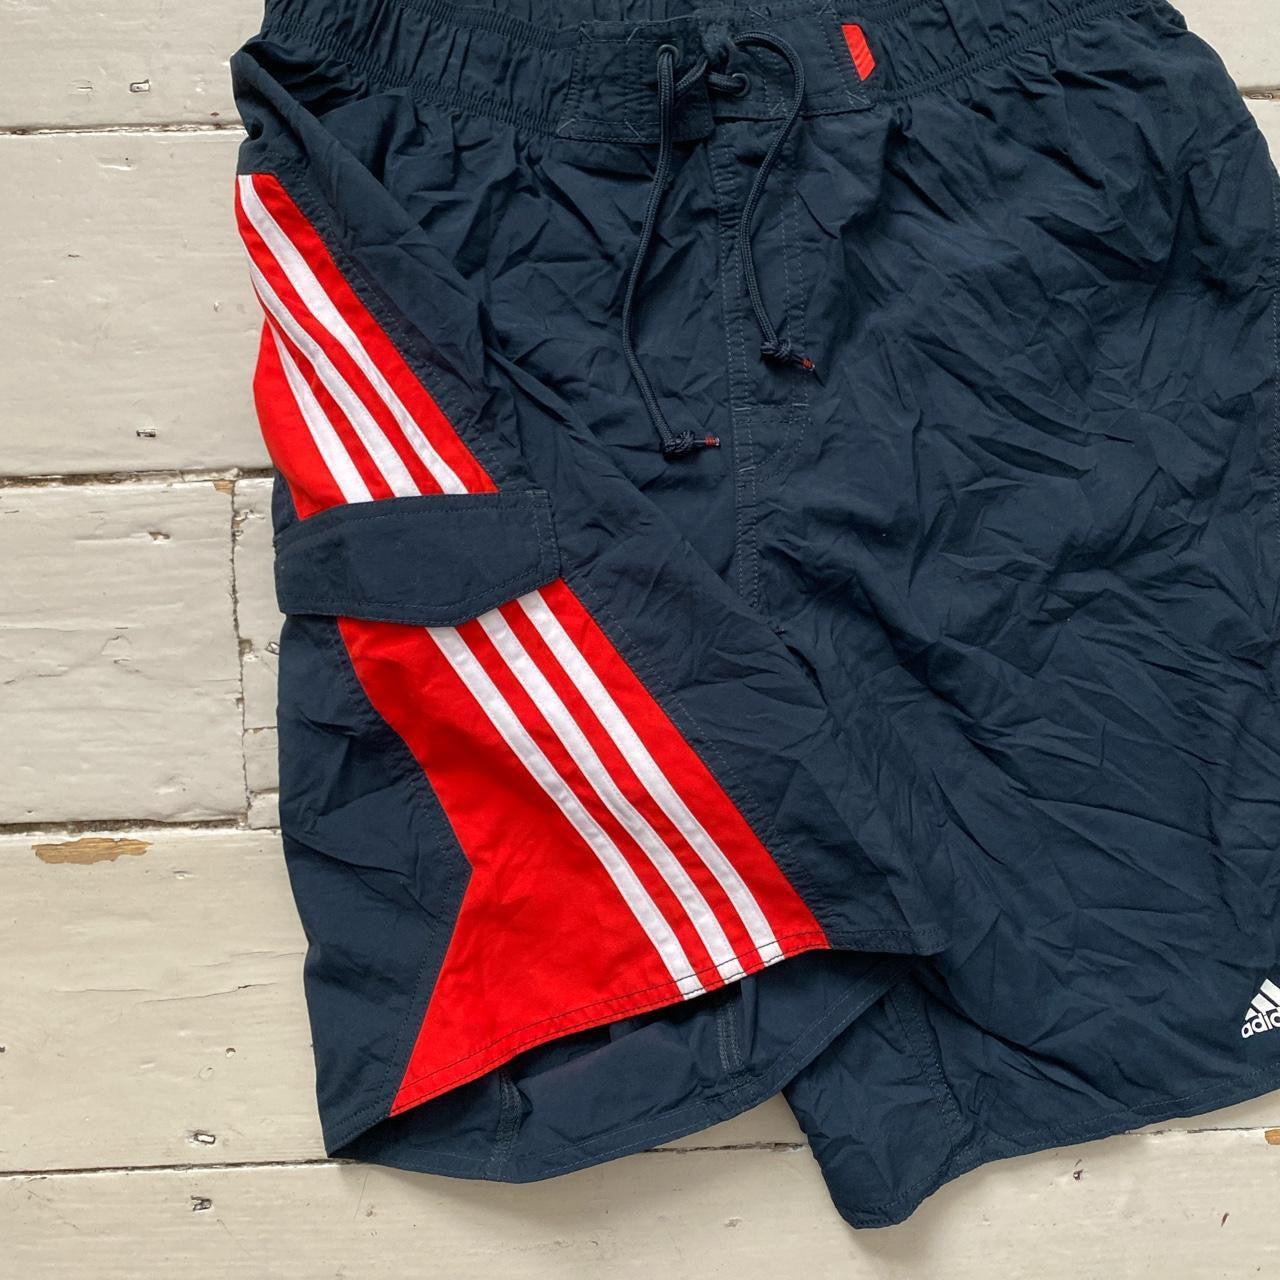 Adidas Cargo Shell Shorts (Large)